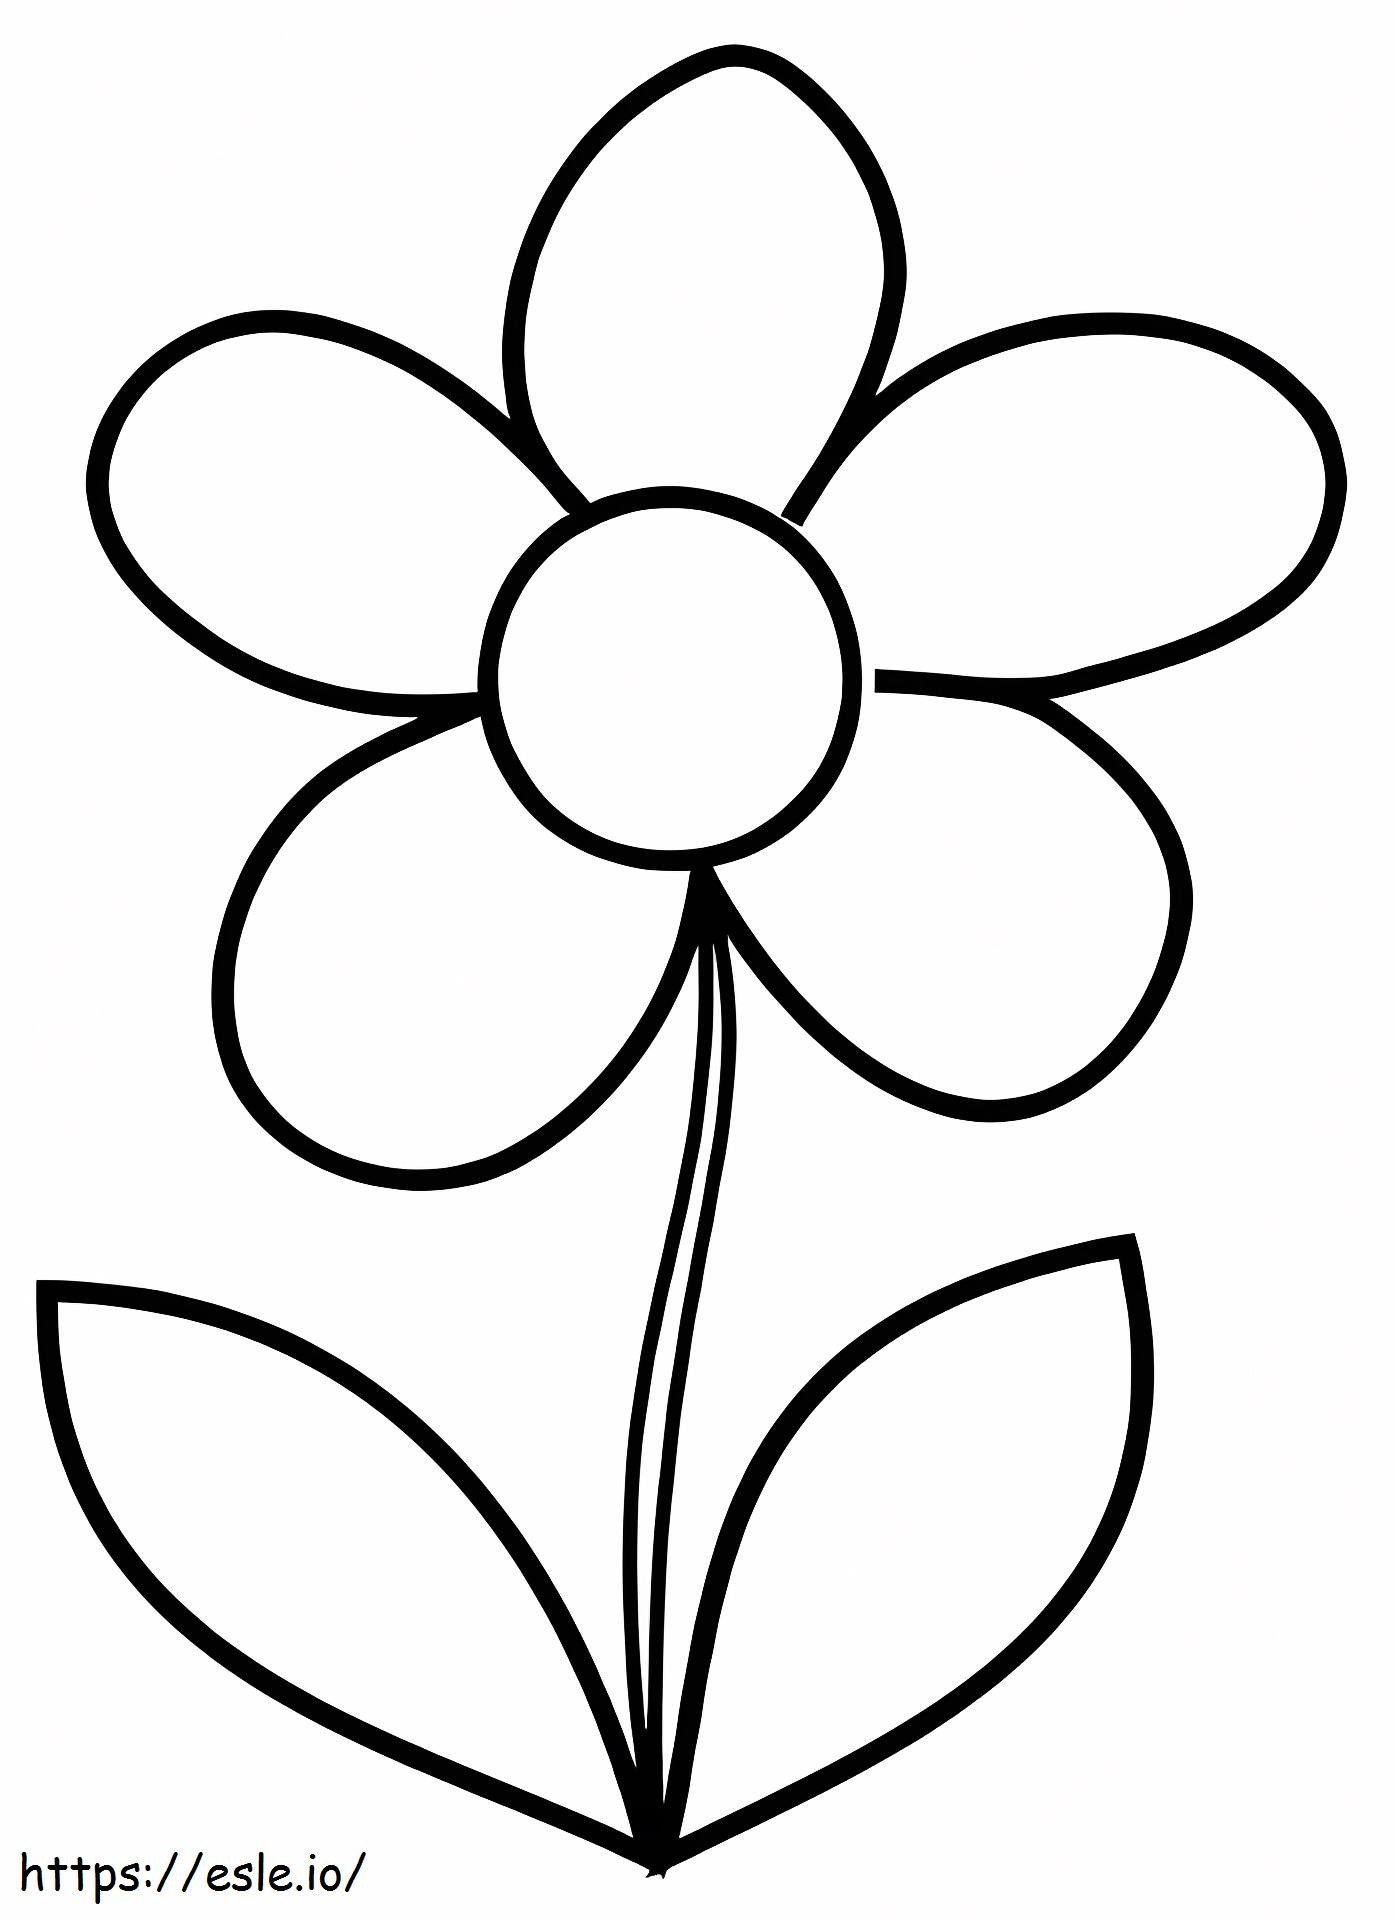 Uma flor simples para colorir